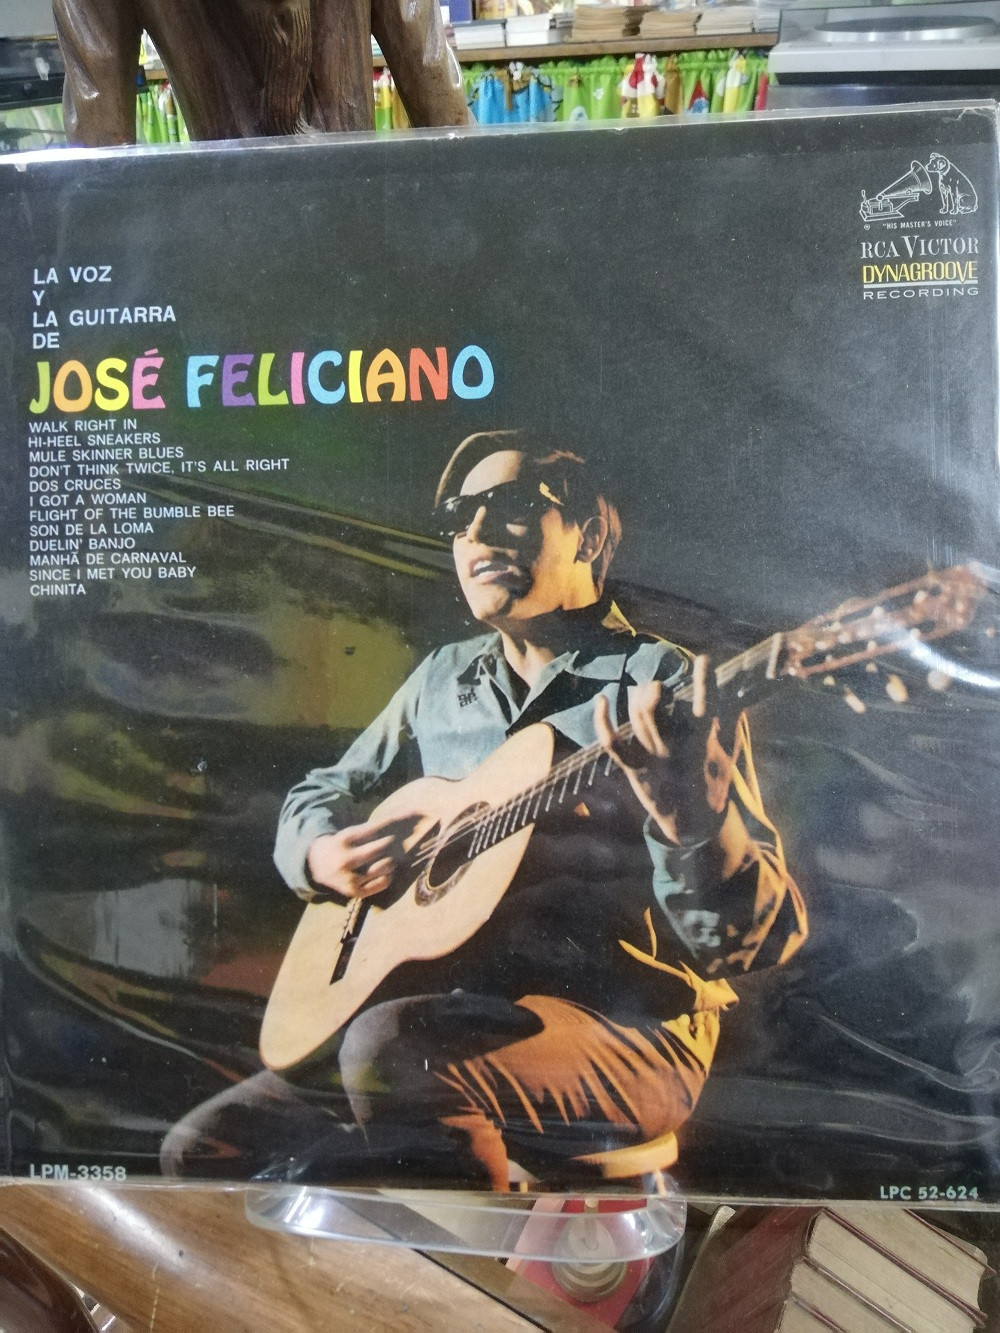 Imagen LP JOSÉ FELICIANO - LA VOZ Y LA GUITARRA DE JOSÉ FELICIANO